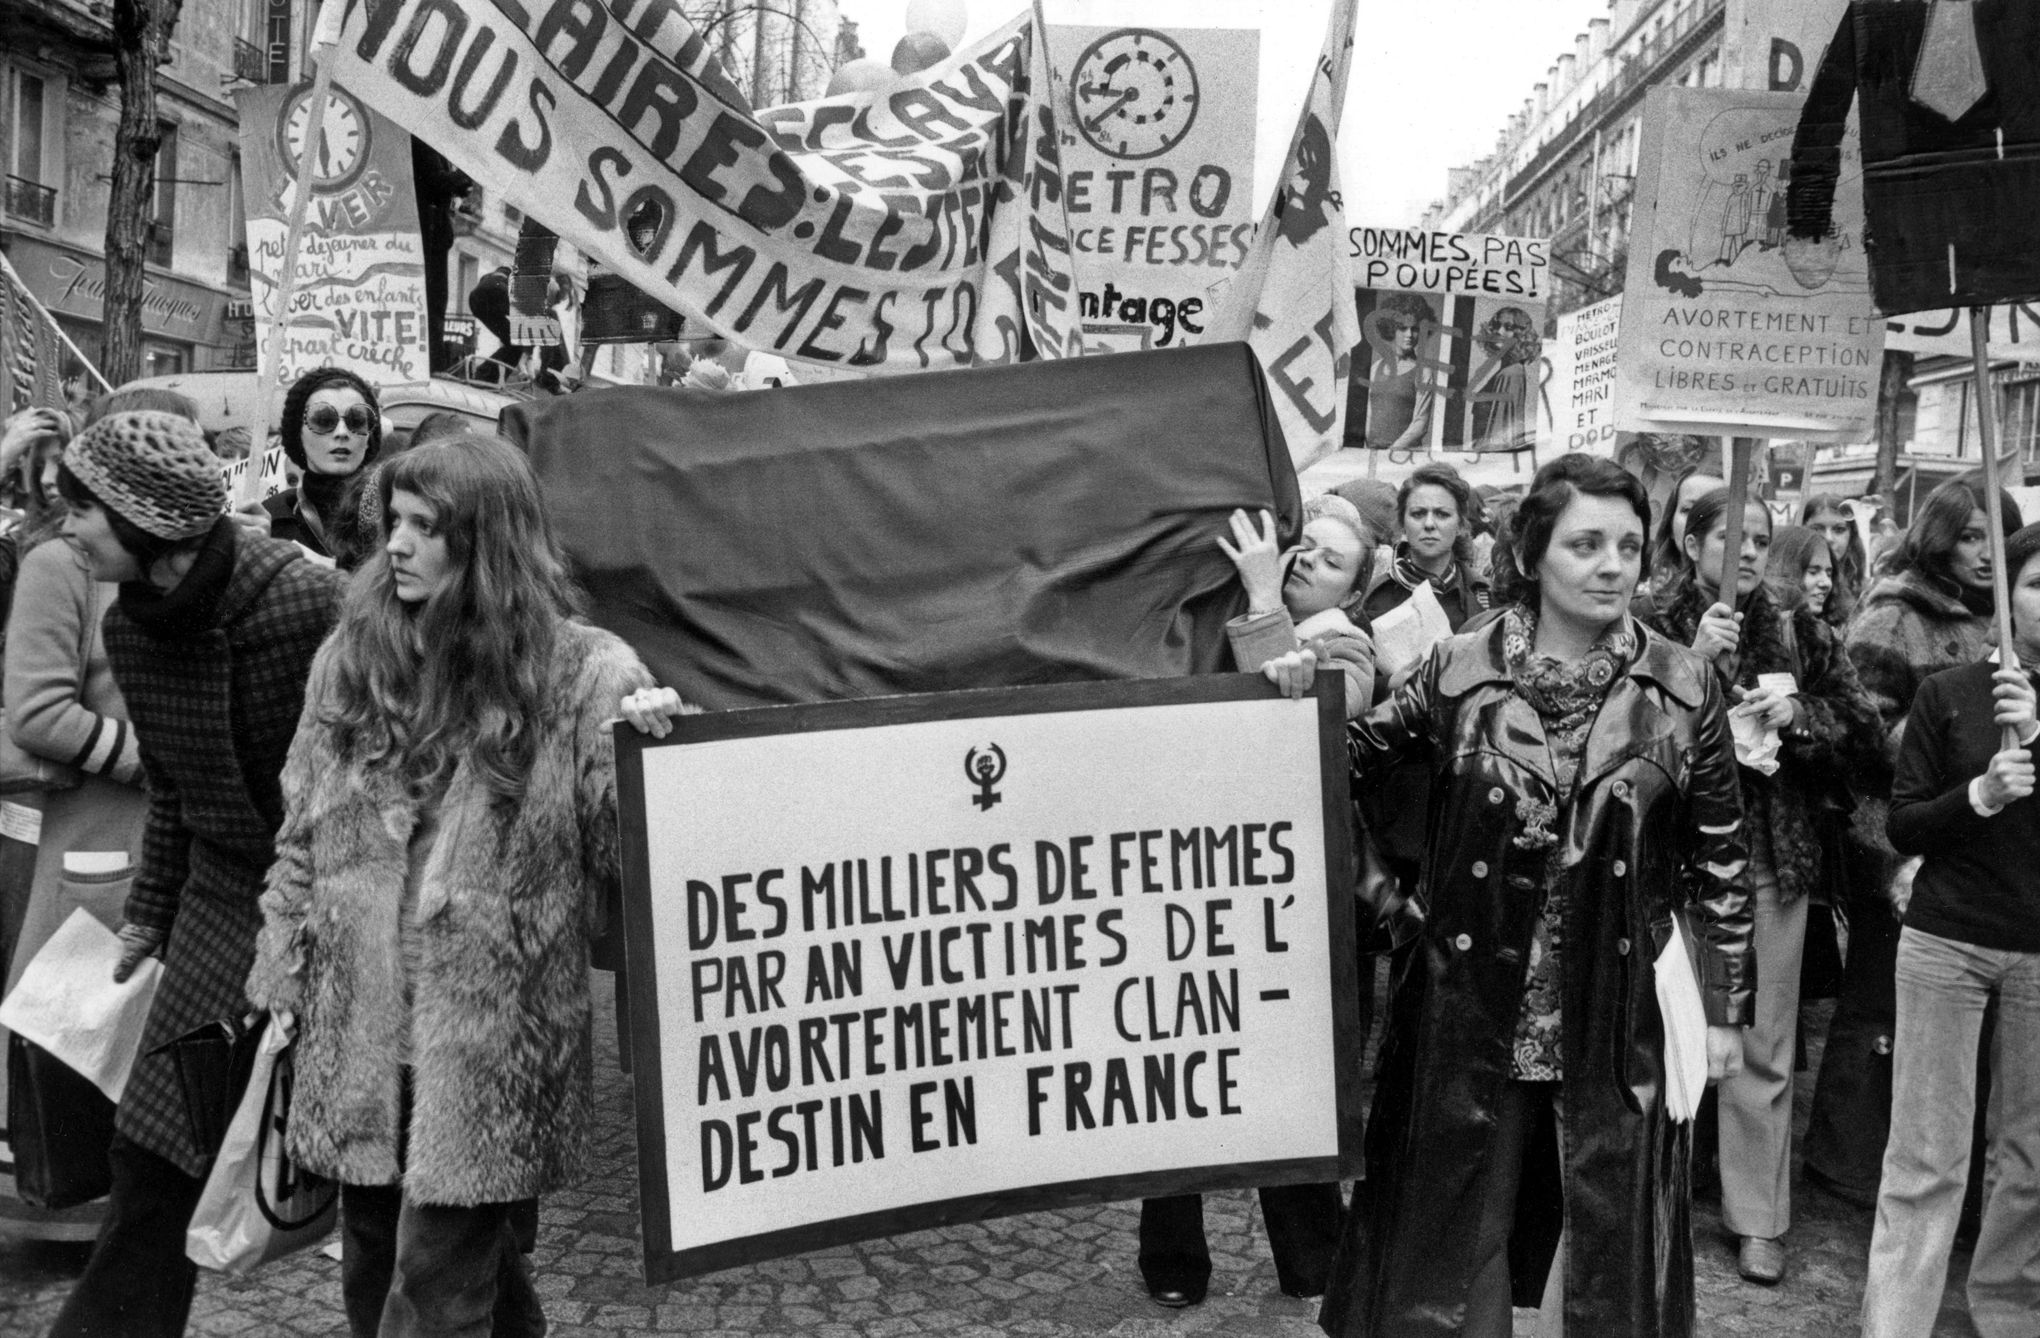 Marche internationale des femmes de la place de la Republique a la place de la Nation a Paris le 20 Novembre 1971 en faveur de la legalisation de l'avortement   ---  International march of women in Paris on November 20, 1971 for legalization of abortion